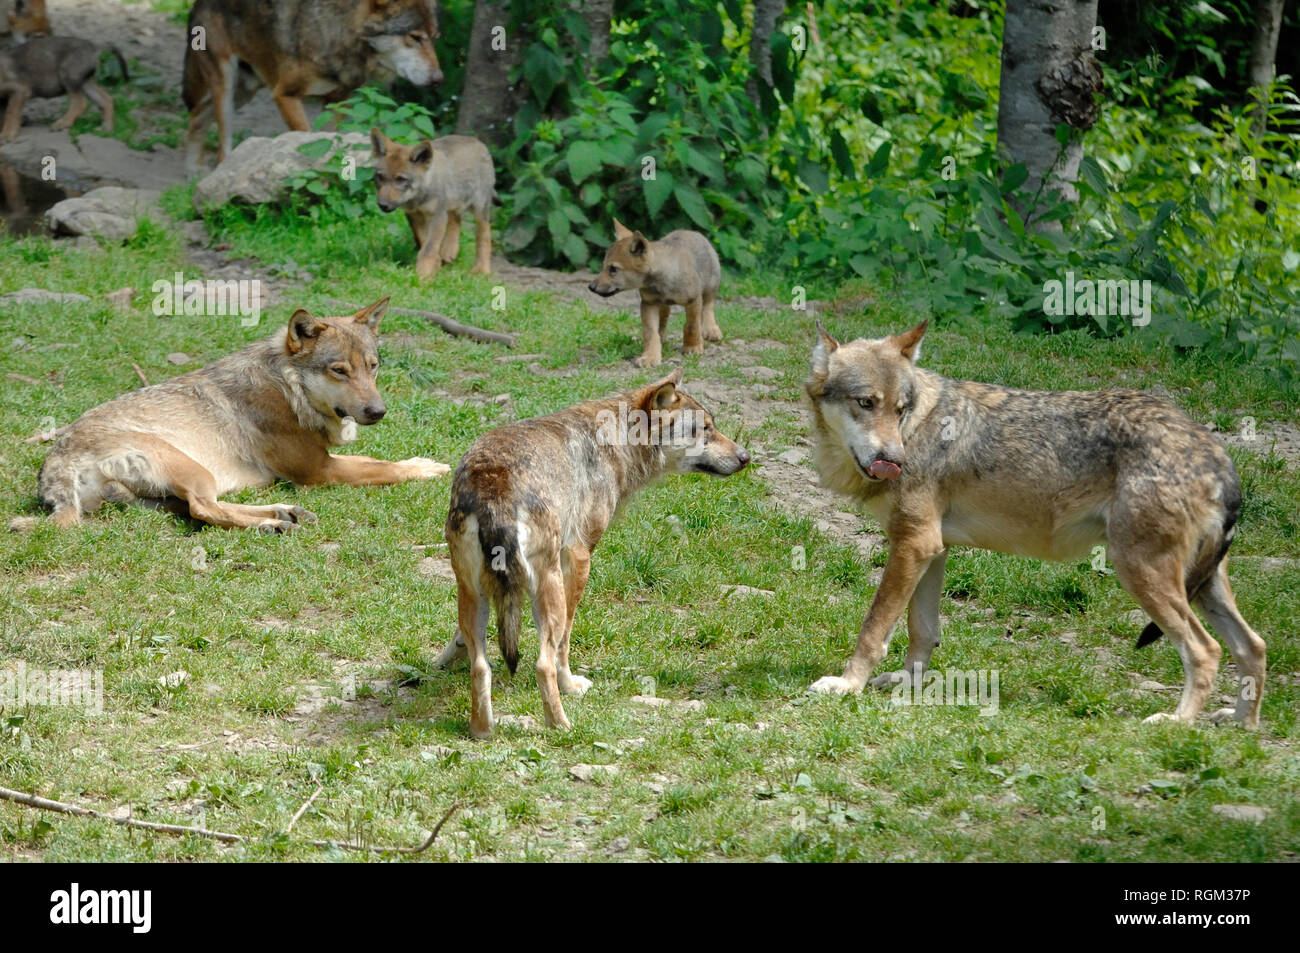 Wolf Pack incluant trois adultes et deux petits. Loup gris, alias le Loup gris ou le loup (Canis lupus) sur le bord de forêt dans le Parc National du Mercantour France Banque D'Images